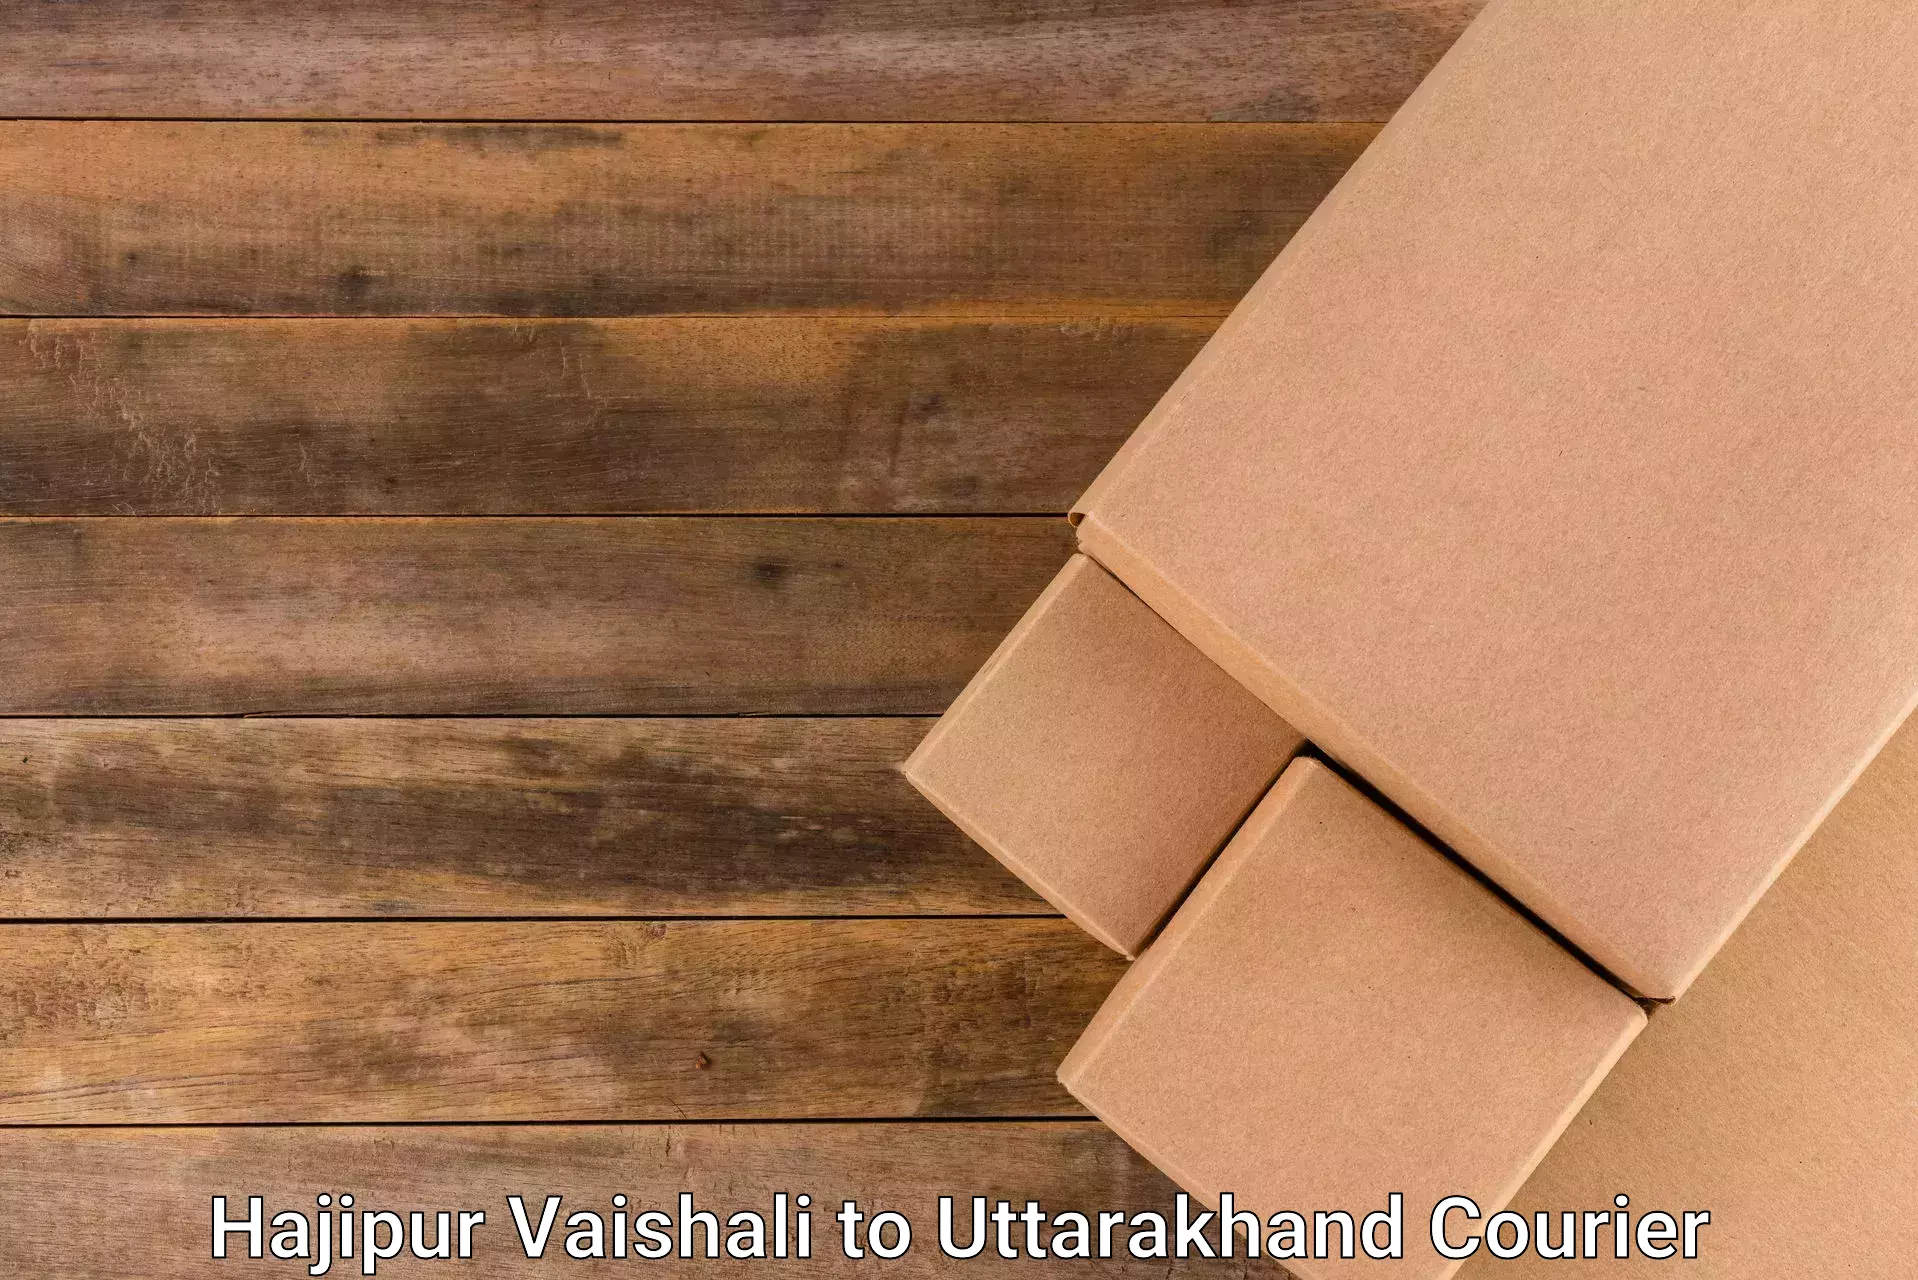 Digital courier platforms Hajipur Vaishali to Bhimtal